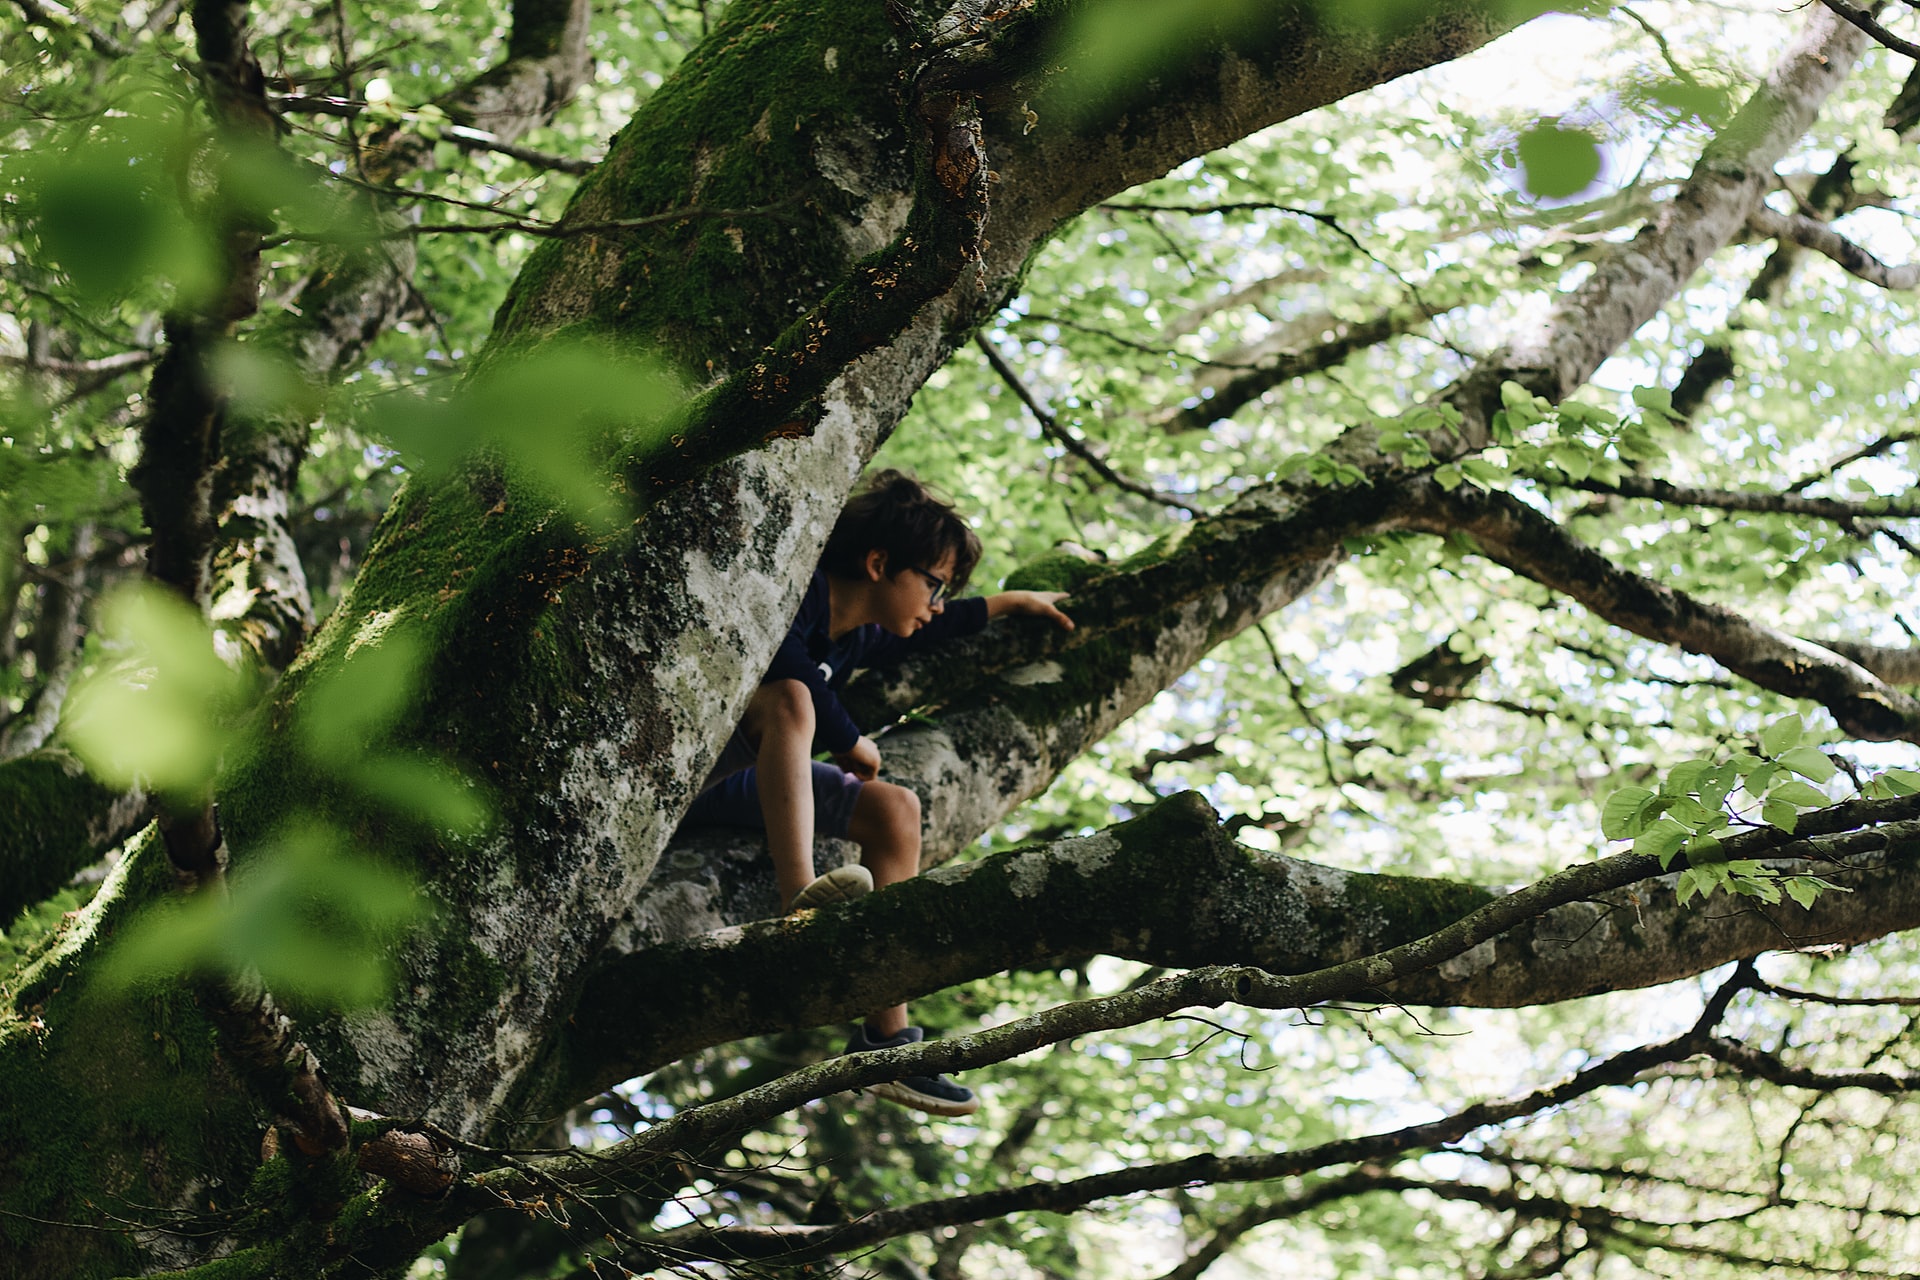 Tree climbing, czyli wspinaczka drzewna – jak się do tego zabrać?